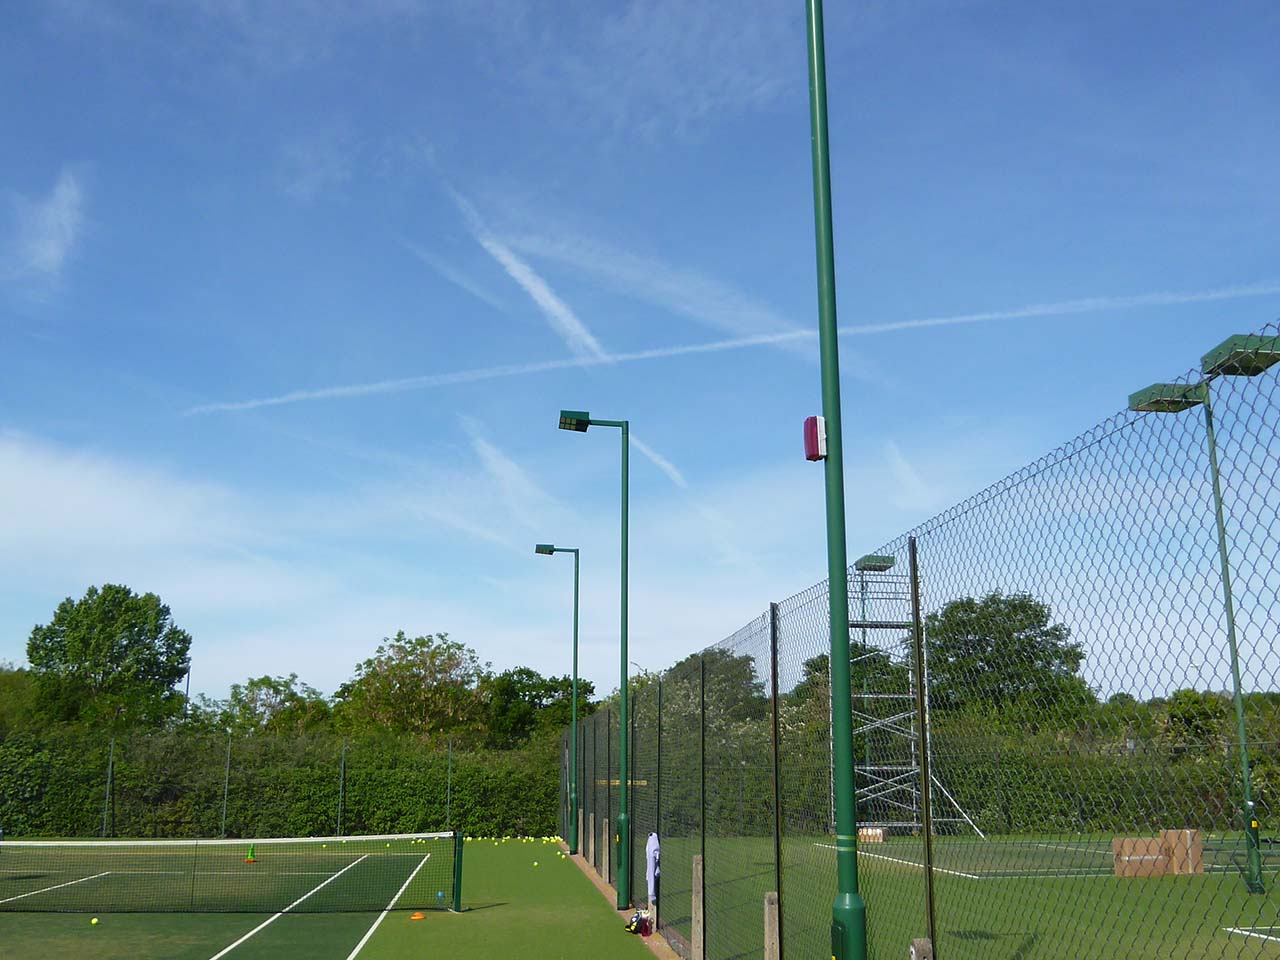 Sodbury Tennis Club